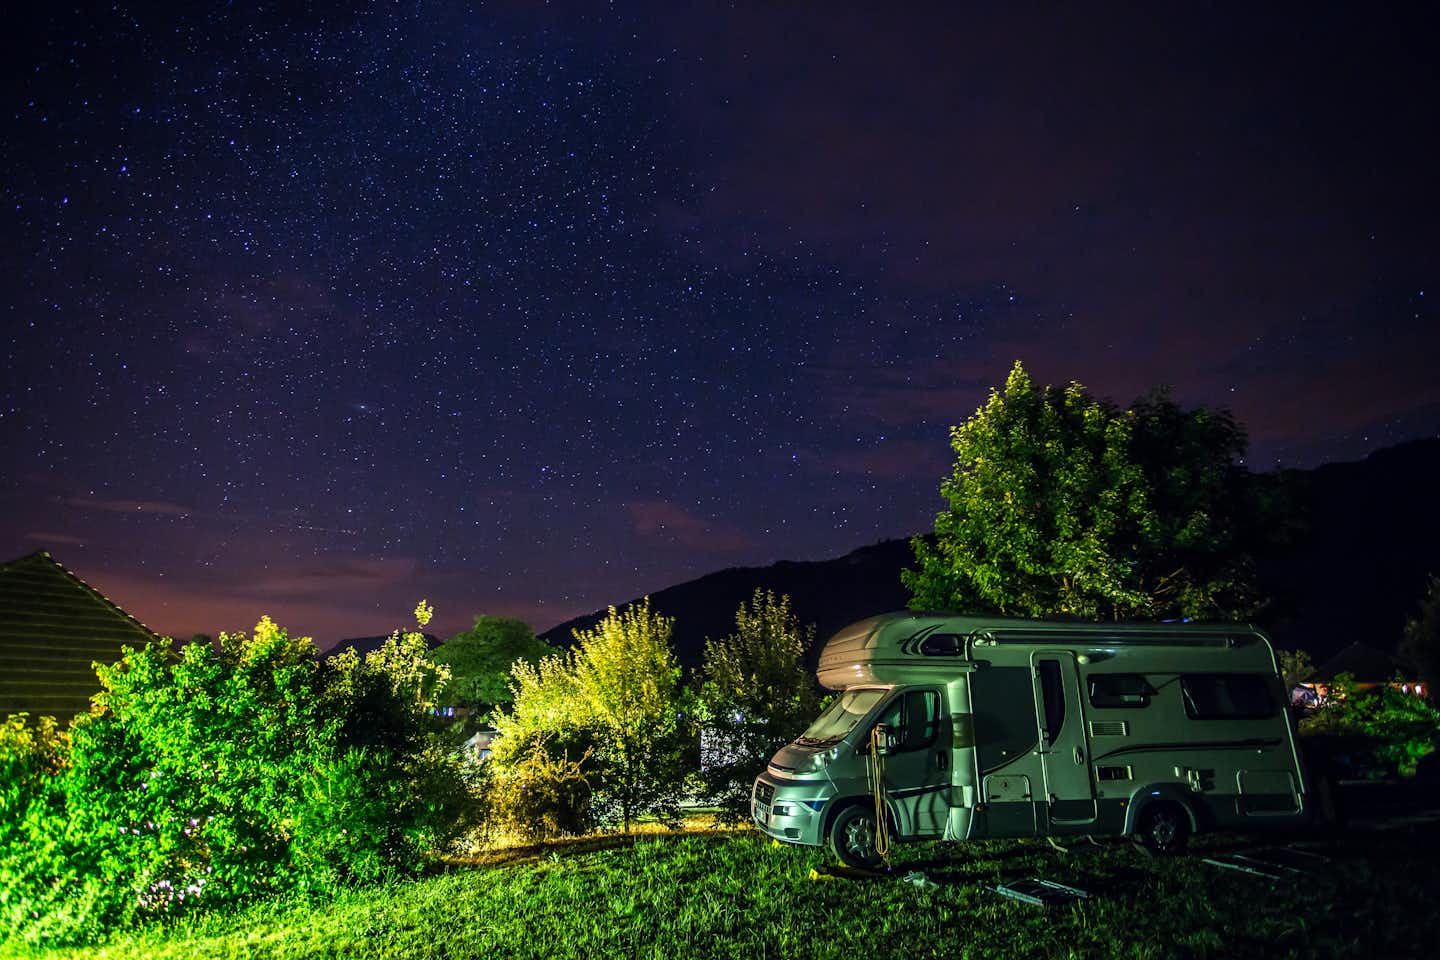 Camping Belle Roche - Wohnmobil auf dem Campingplatz unter einem nächtlichen Sternenhimmel